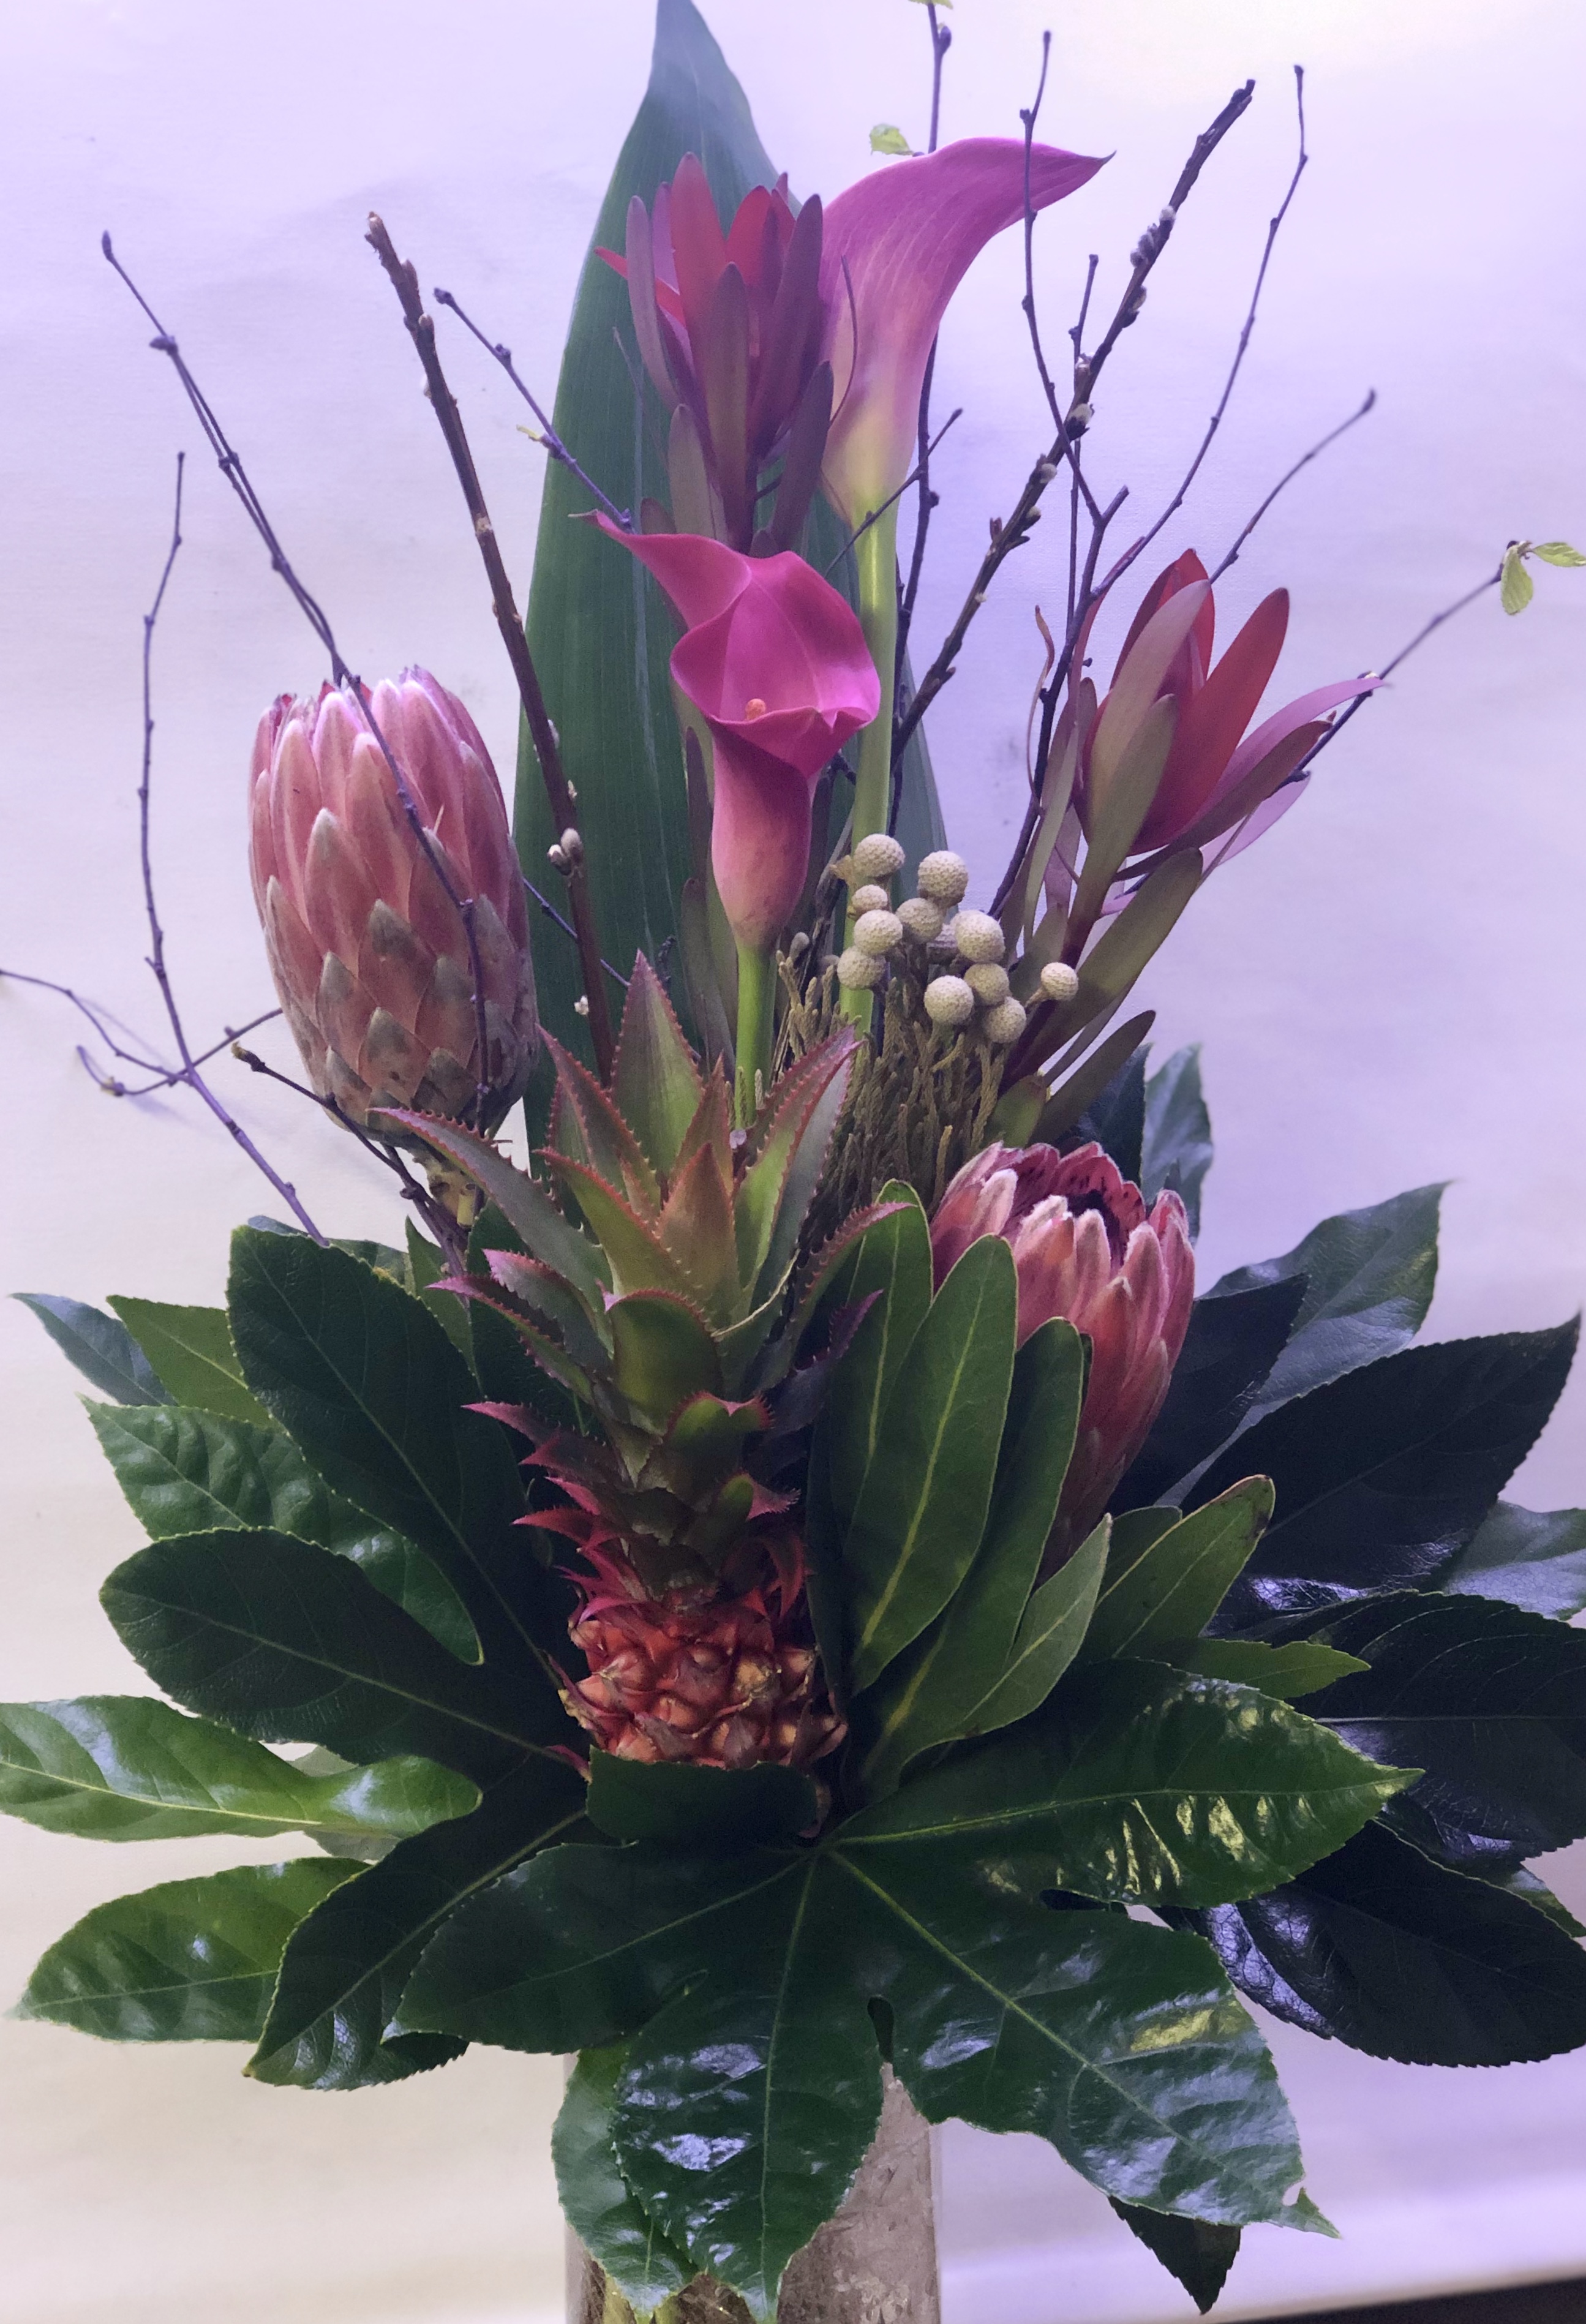 Protea and Ananas Tropical Display